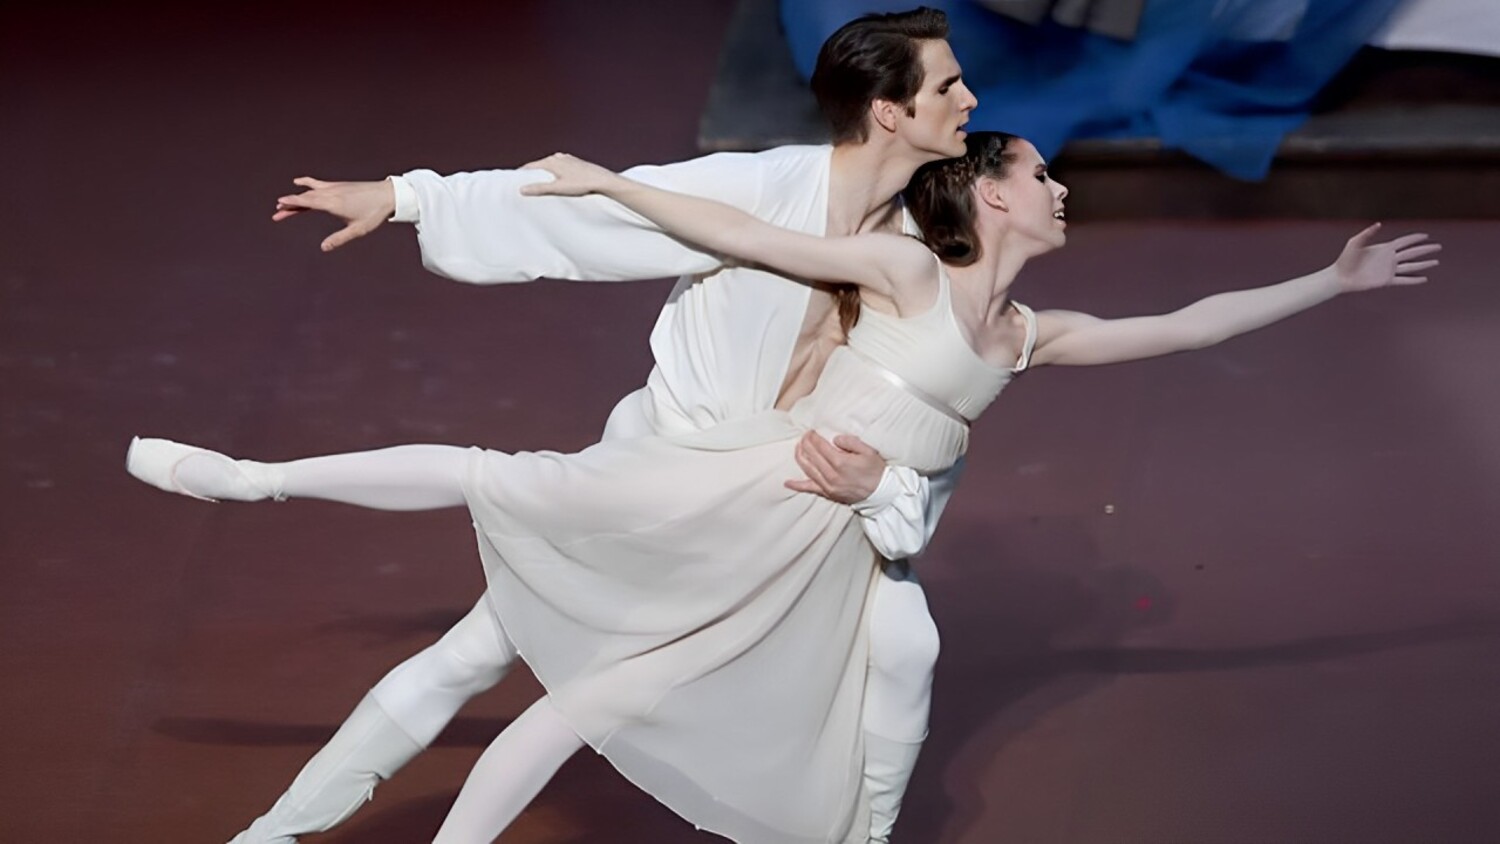 La storia dei due amanti di Verona rivive nel balletto su musiche di Sergej Prokofiev con la coreografia di John Cranko - con E.Badenes, D.Moore - Staatsorchester Stuttgart - J.Tuggle, dir. (Stuttgart Ballett, 2017)